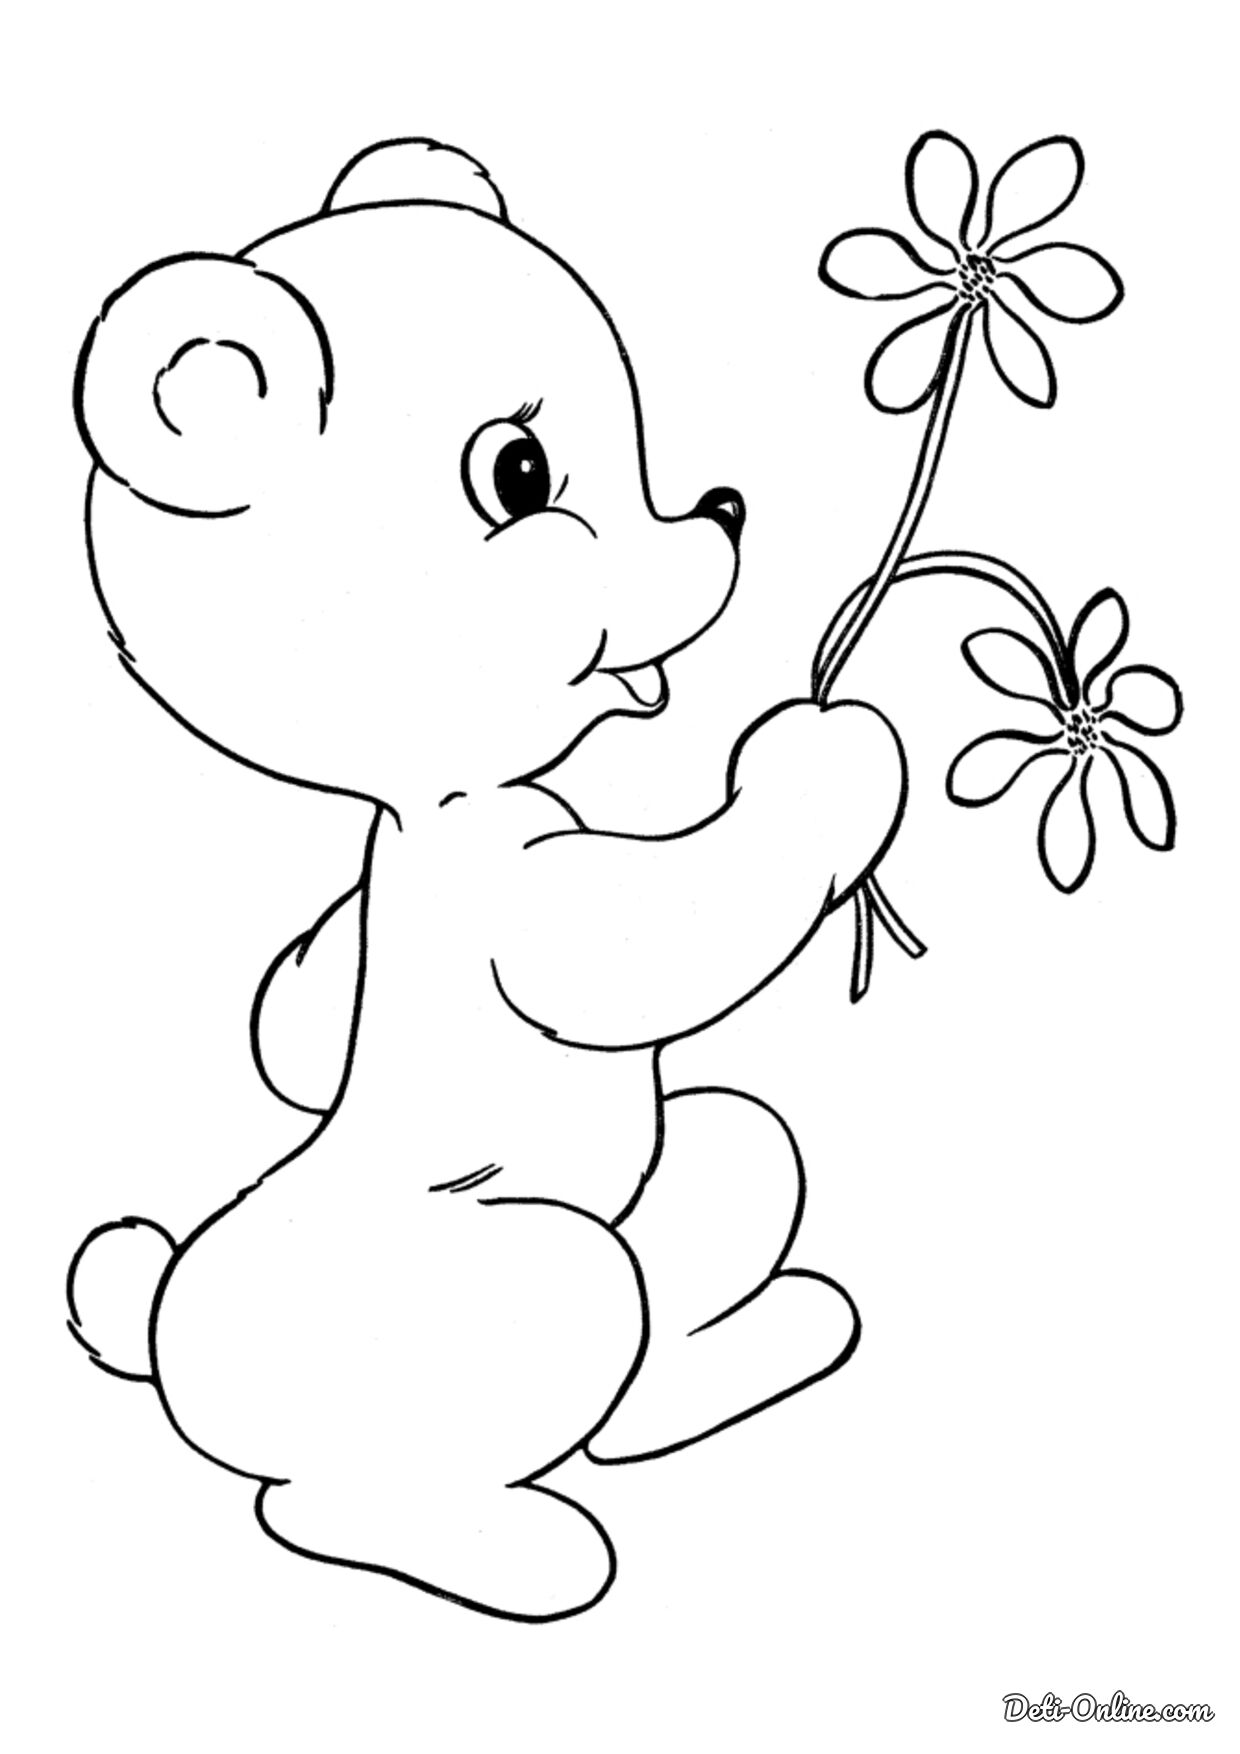 Картинки для раскрашивания для детей. Раскраска. Медвежонок. Раскраска "мишки". Медвежонок раскраска для детей. Мишка раскраска для малышей.